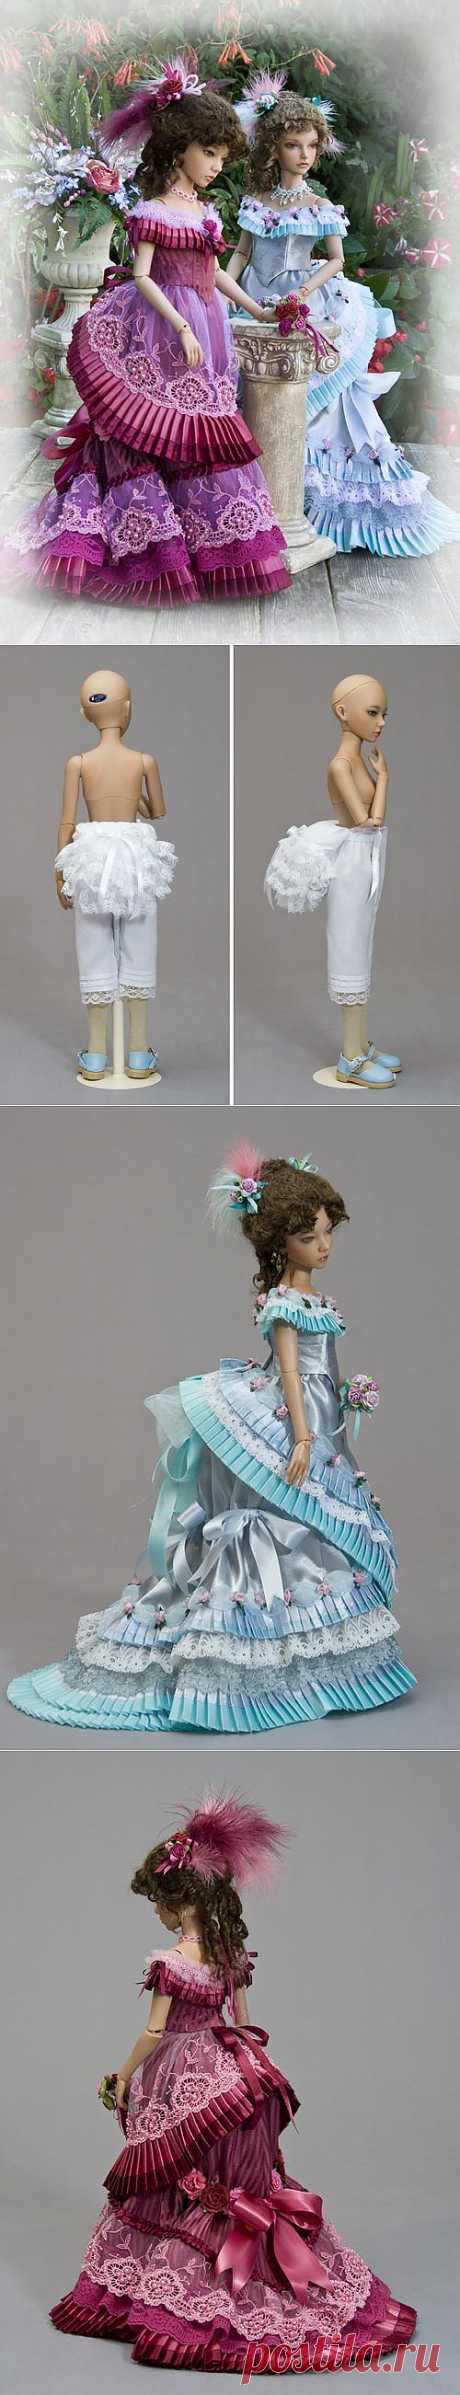 МК платья для куклы в Викторианском стиле.